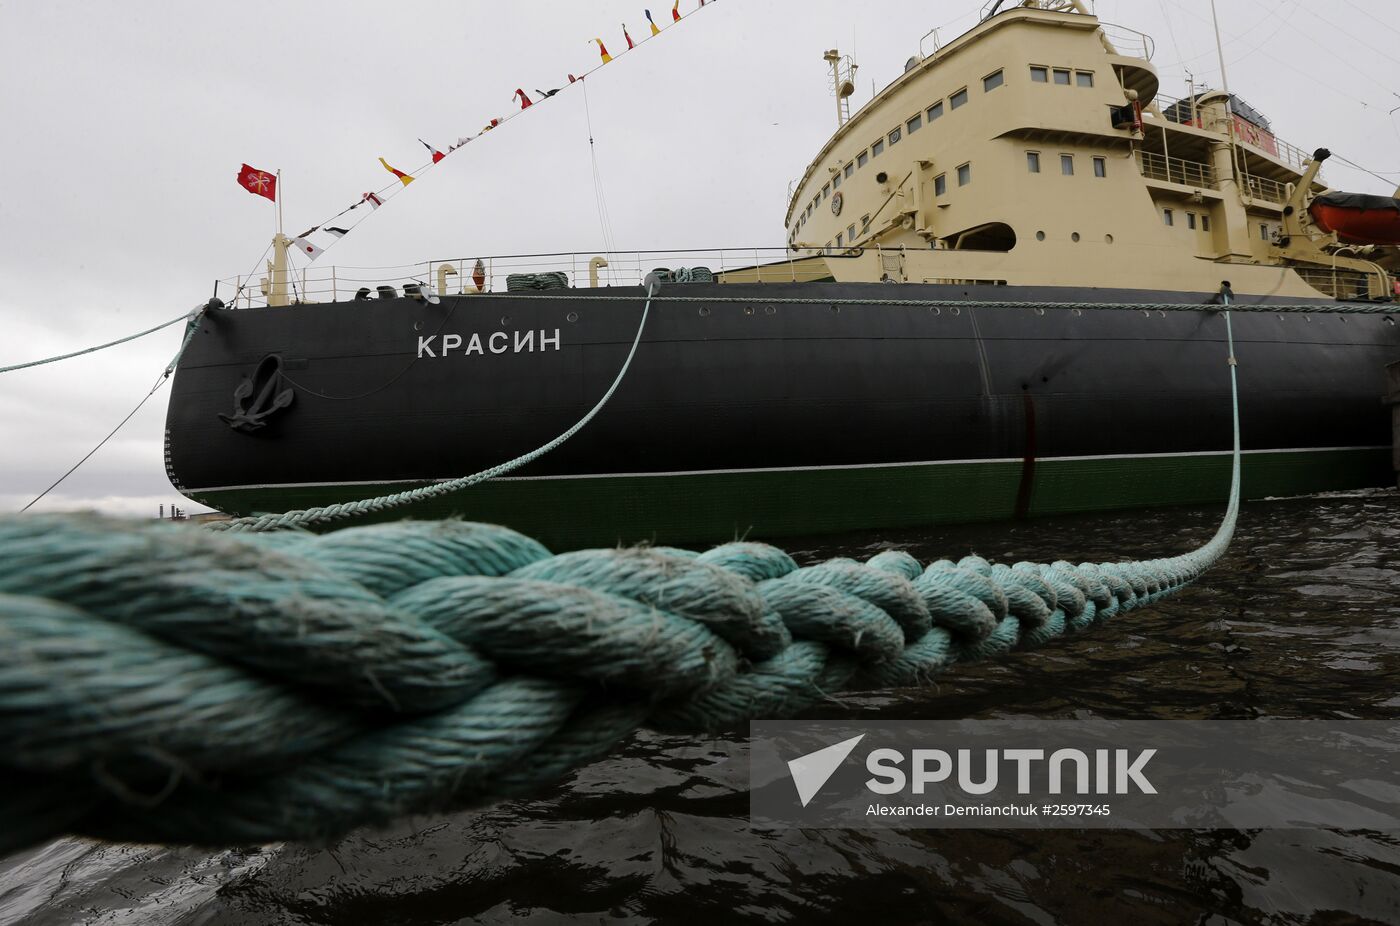 98th anniversary of icebreaker Krasin in St. Petersburg